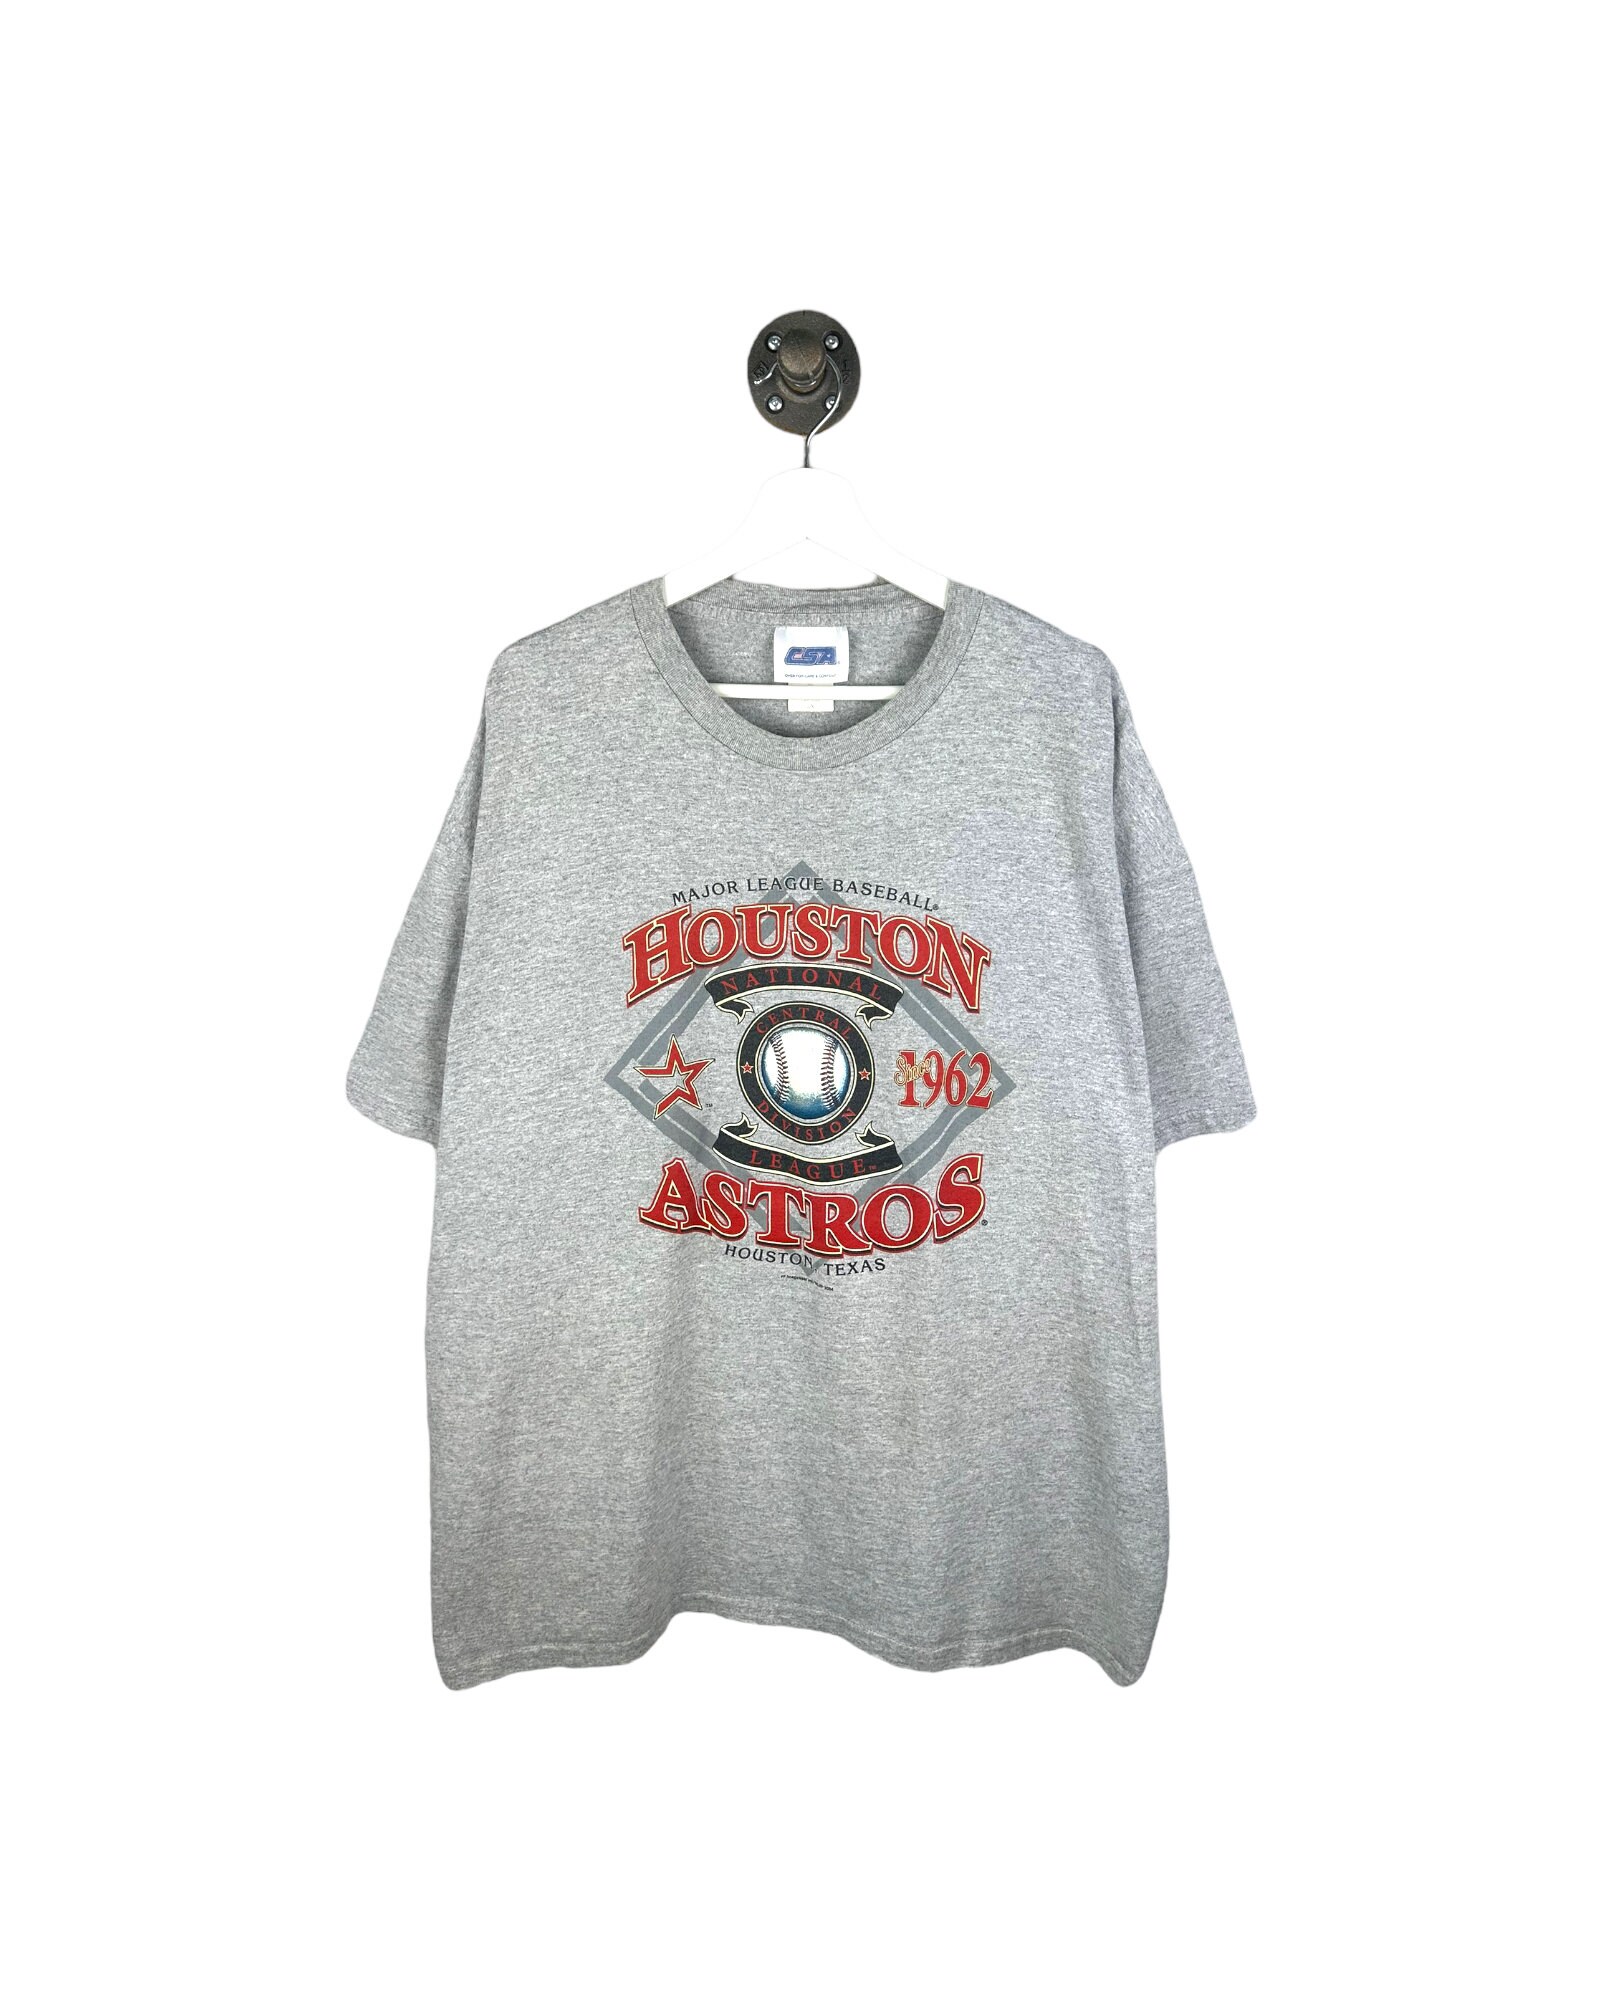 Vintage MLB (Salem) - Houston Astros Single Stitch T-Shirt 1994